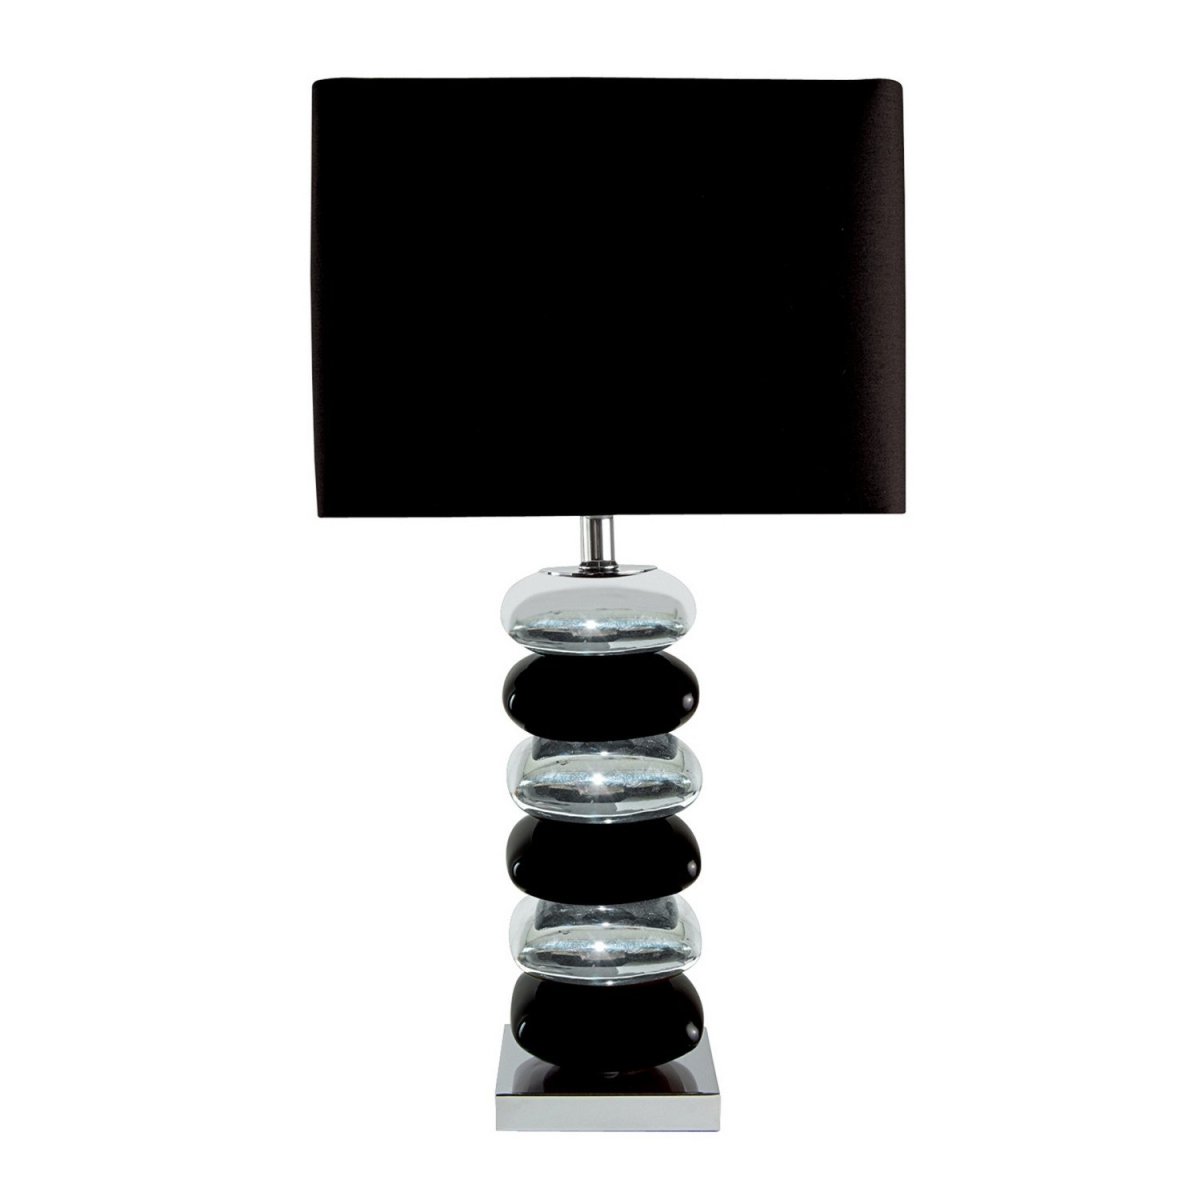 Black & Chrome Pillow Stack Desk Table Lamp Fabric Shade Bedside Office Light - Bonnypack